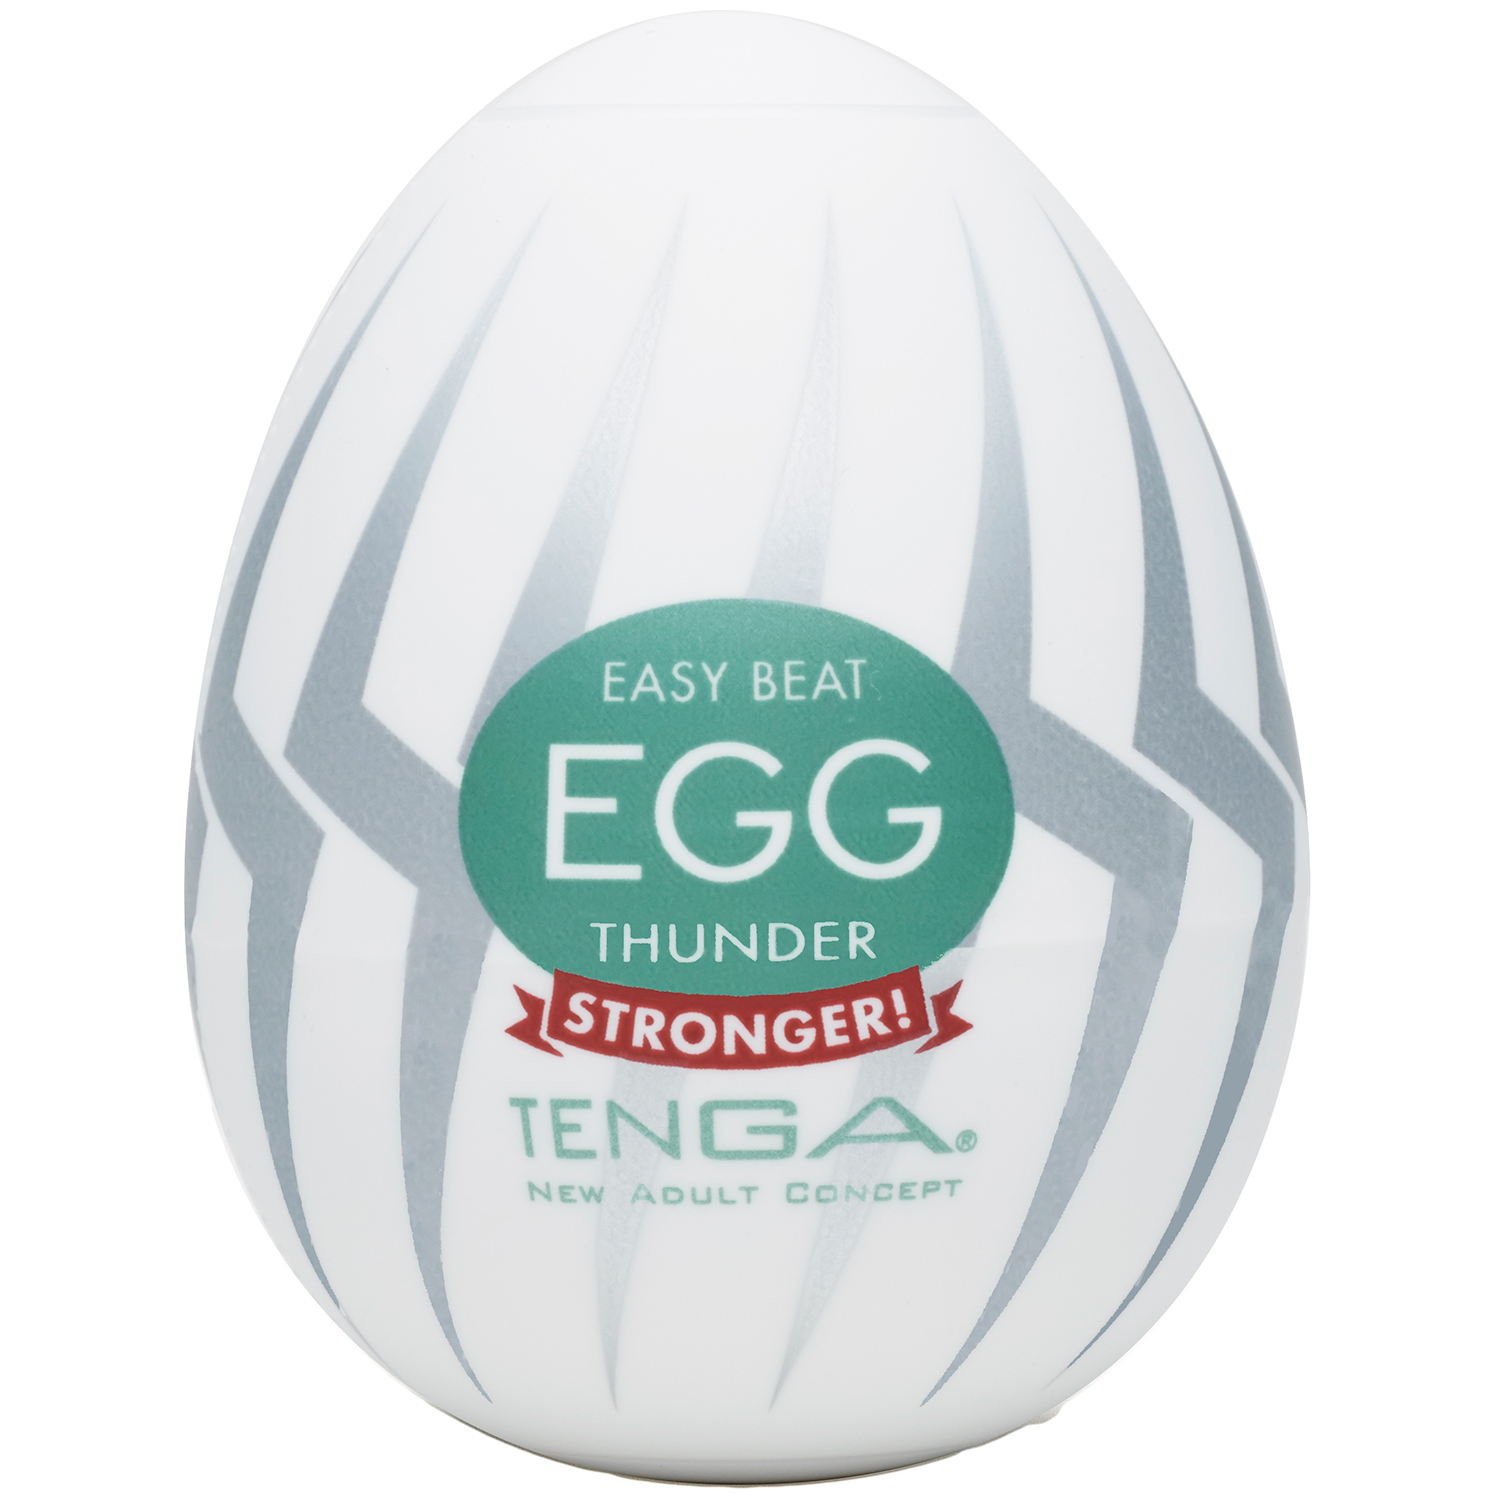 TENGA Egg Thunder Onani Handjob för Män - TENGA